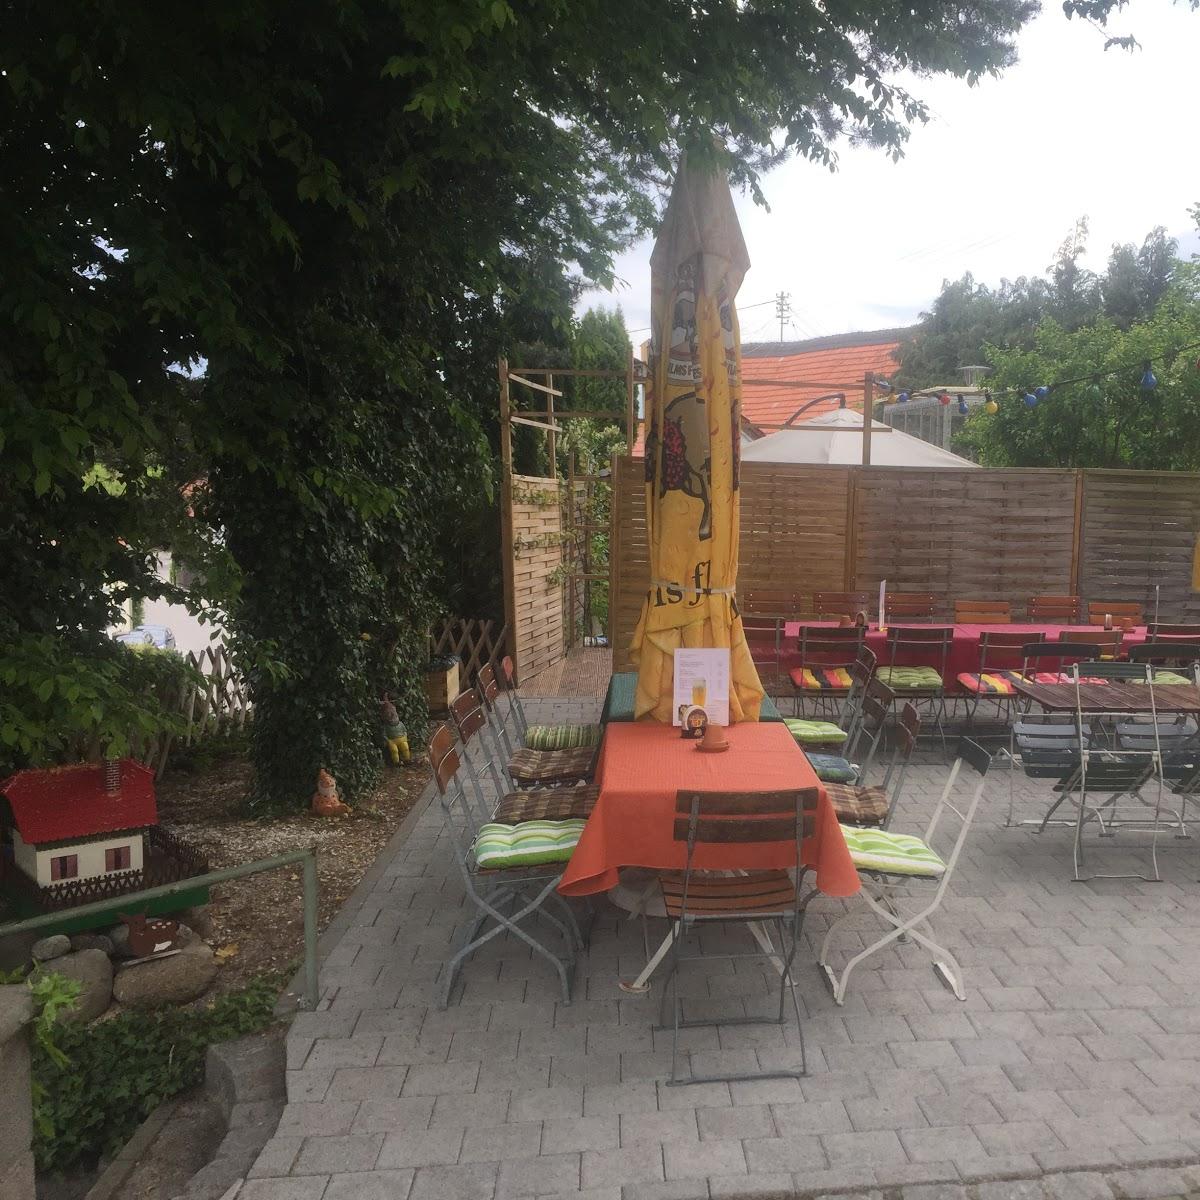 Restaurant "Paradiesstube" in  Babenhausen